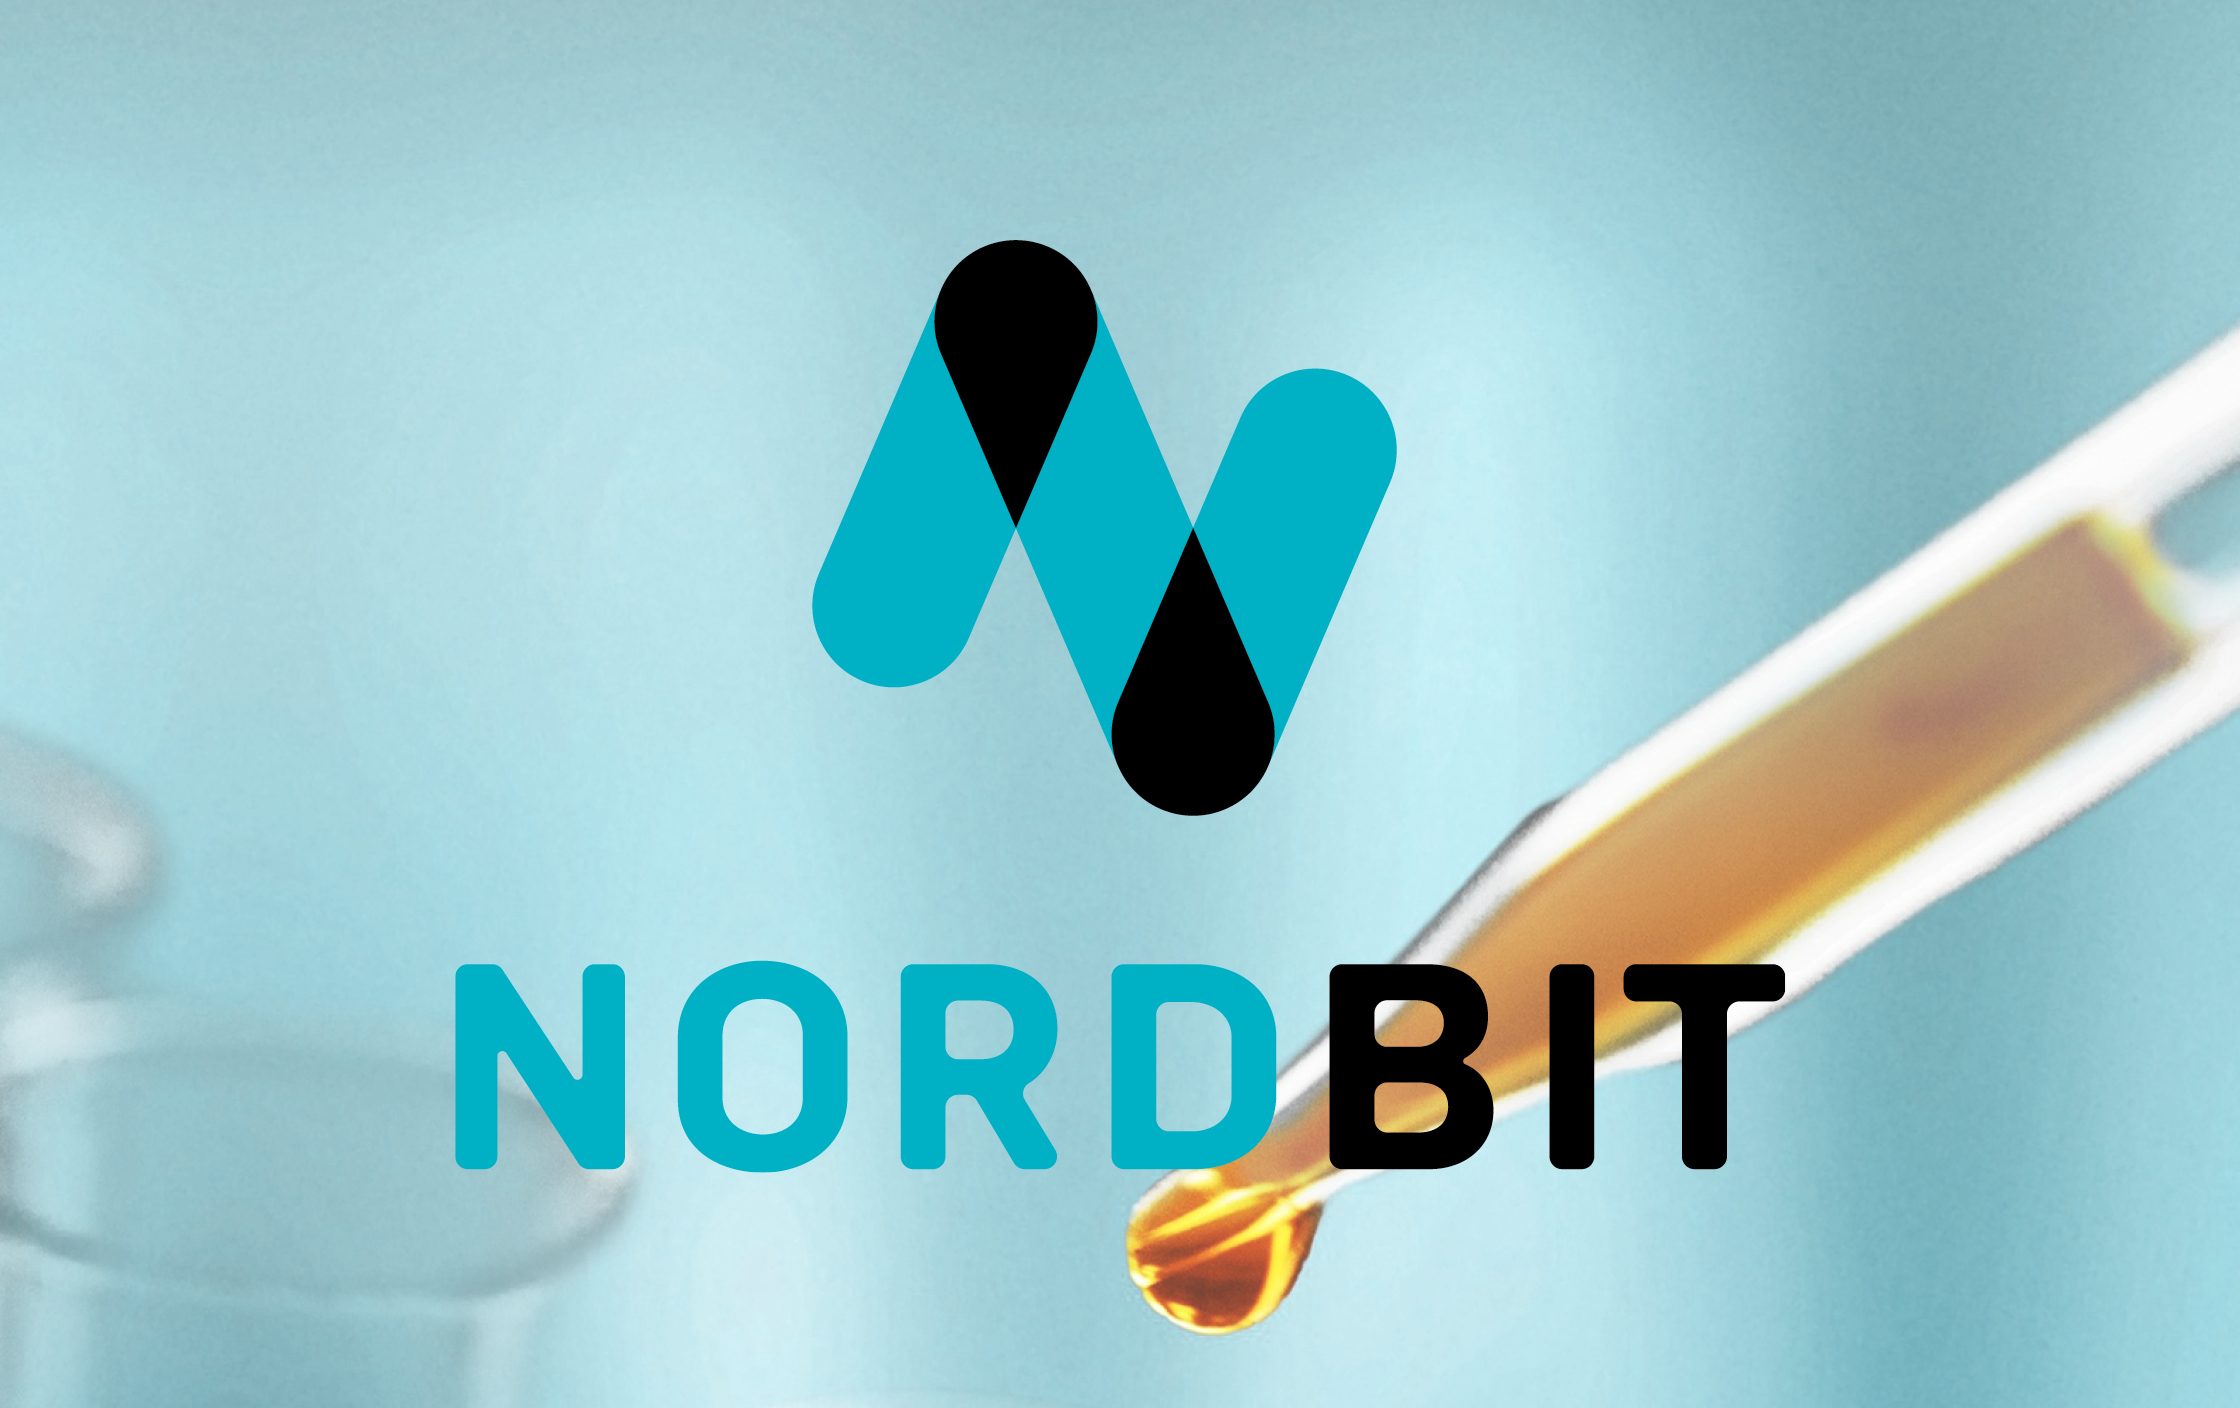 Nordbit Website Launch online